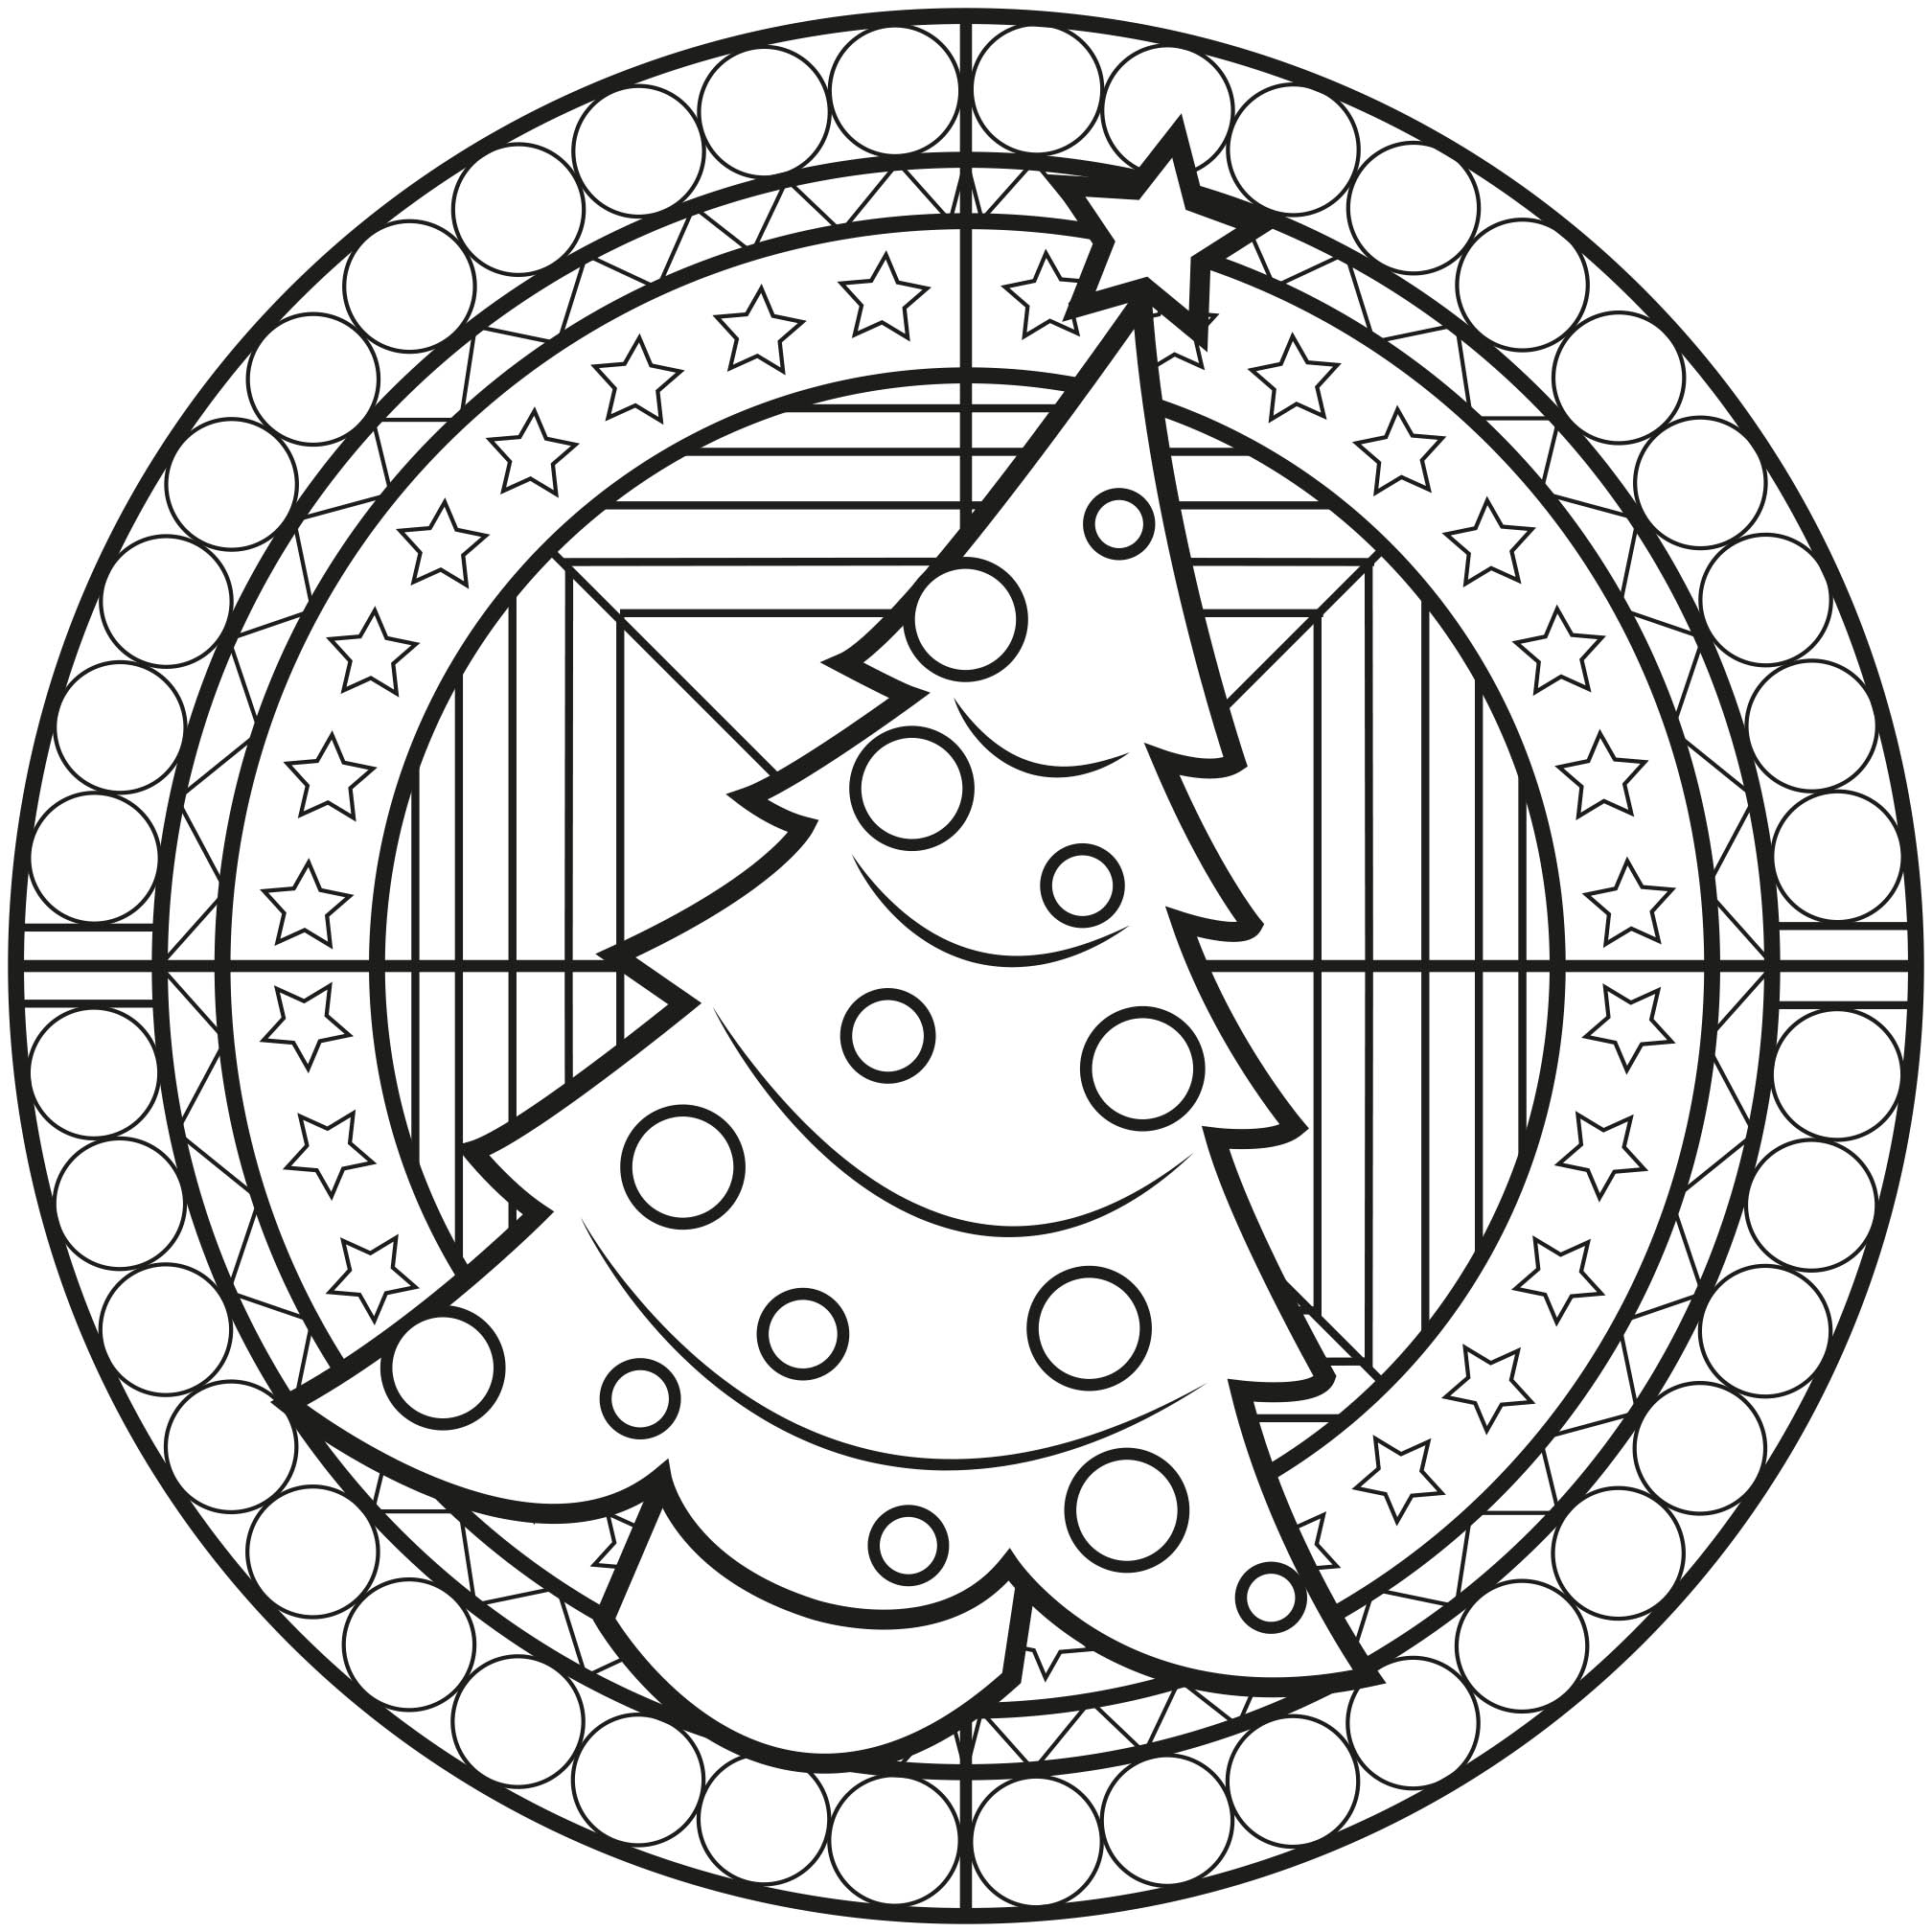 Il Natale sta arrivando! Entrate nell'atmosfera con questo mandala natalizio che contiene un grande albero di Natale al centro.